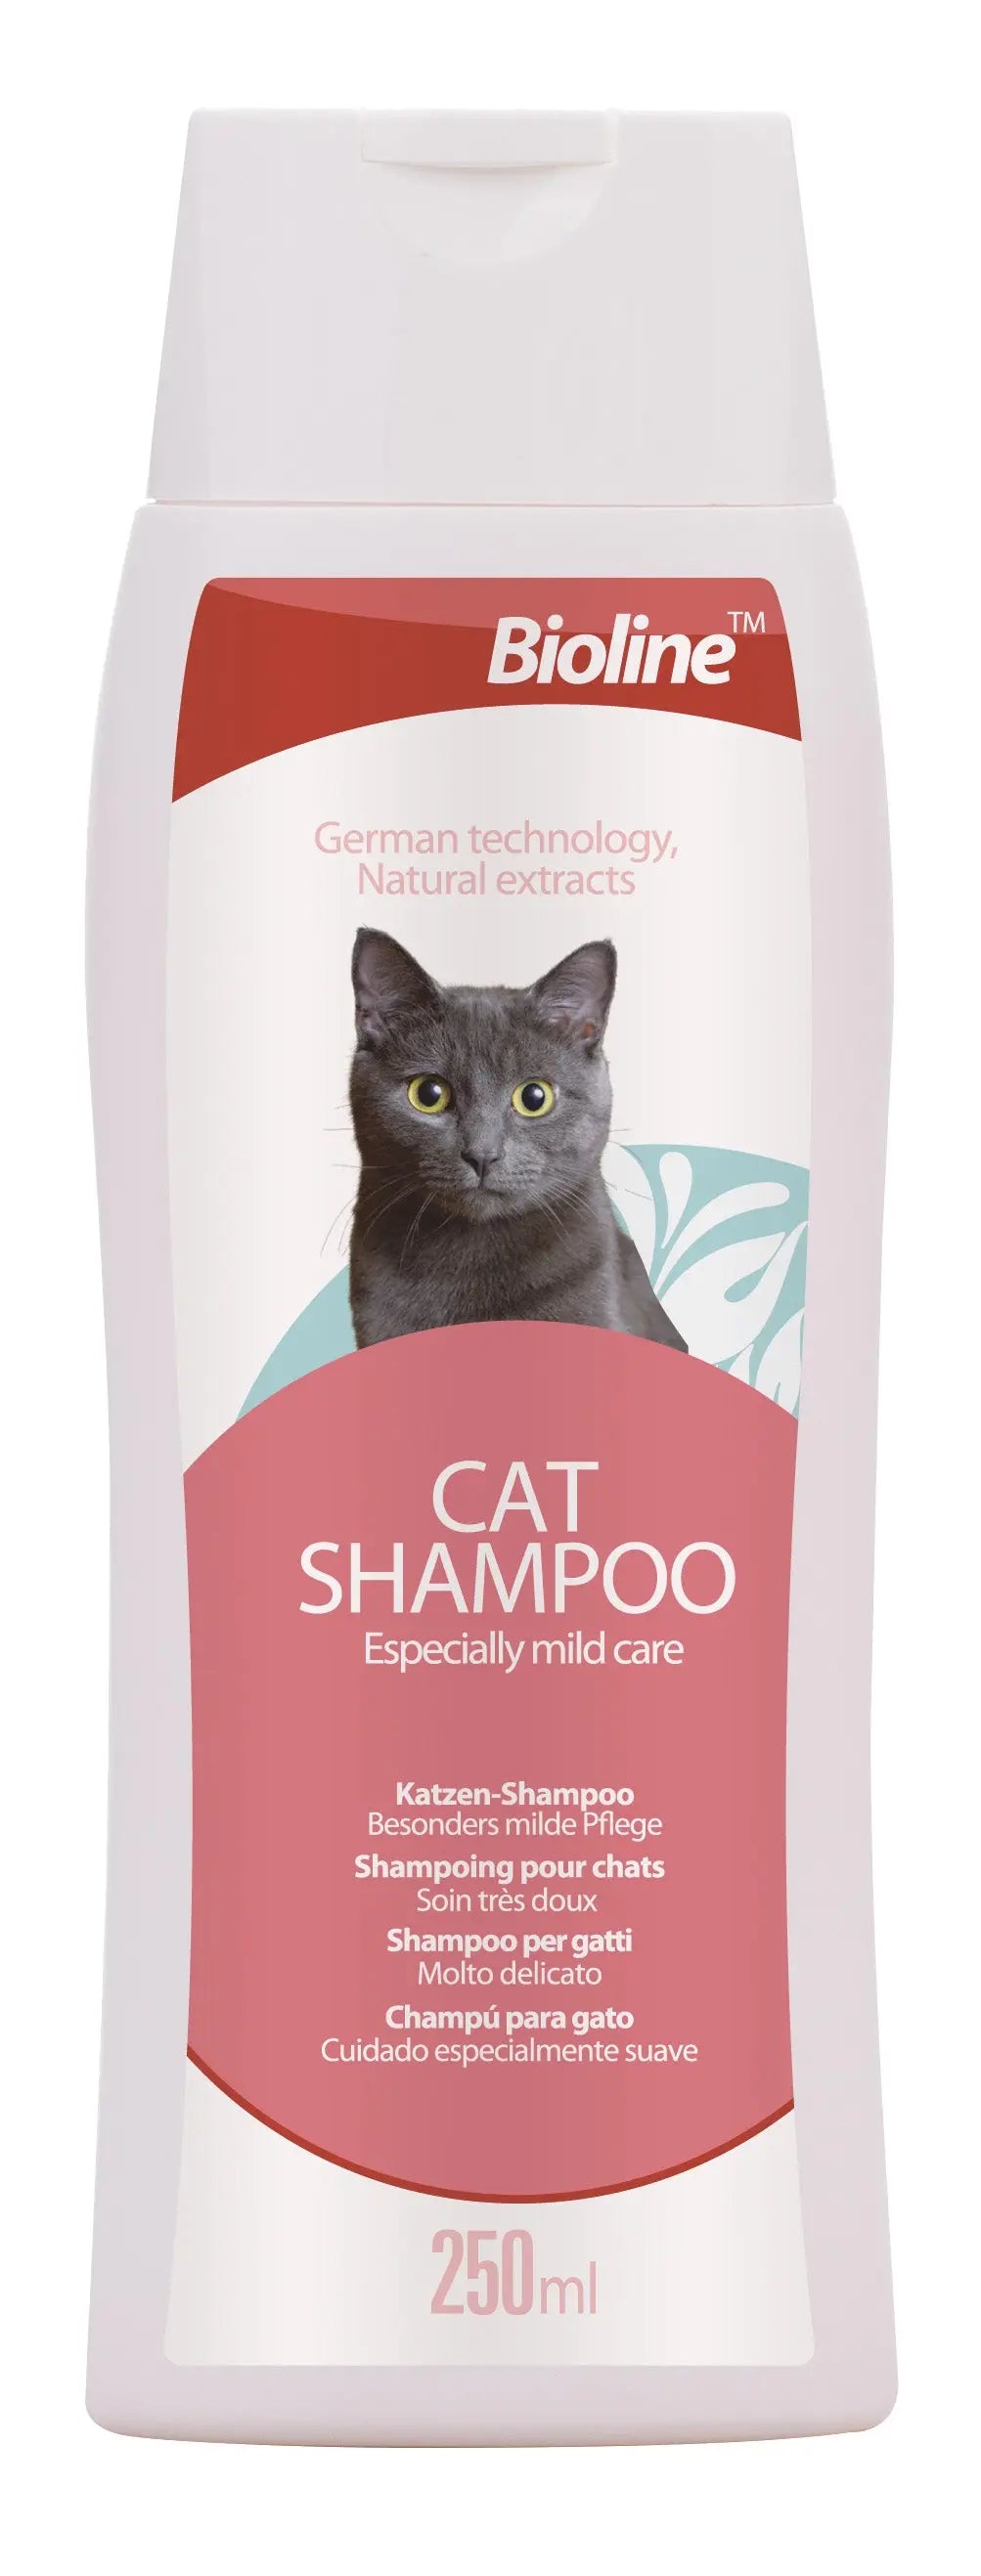 Shampooing pour chat-Care-250mL de poils de chat